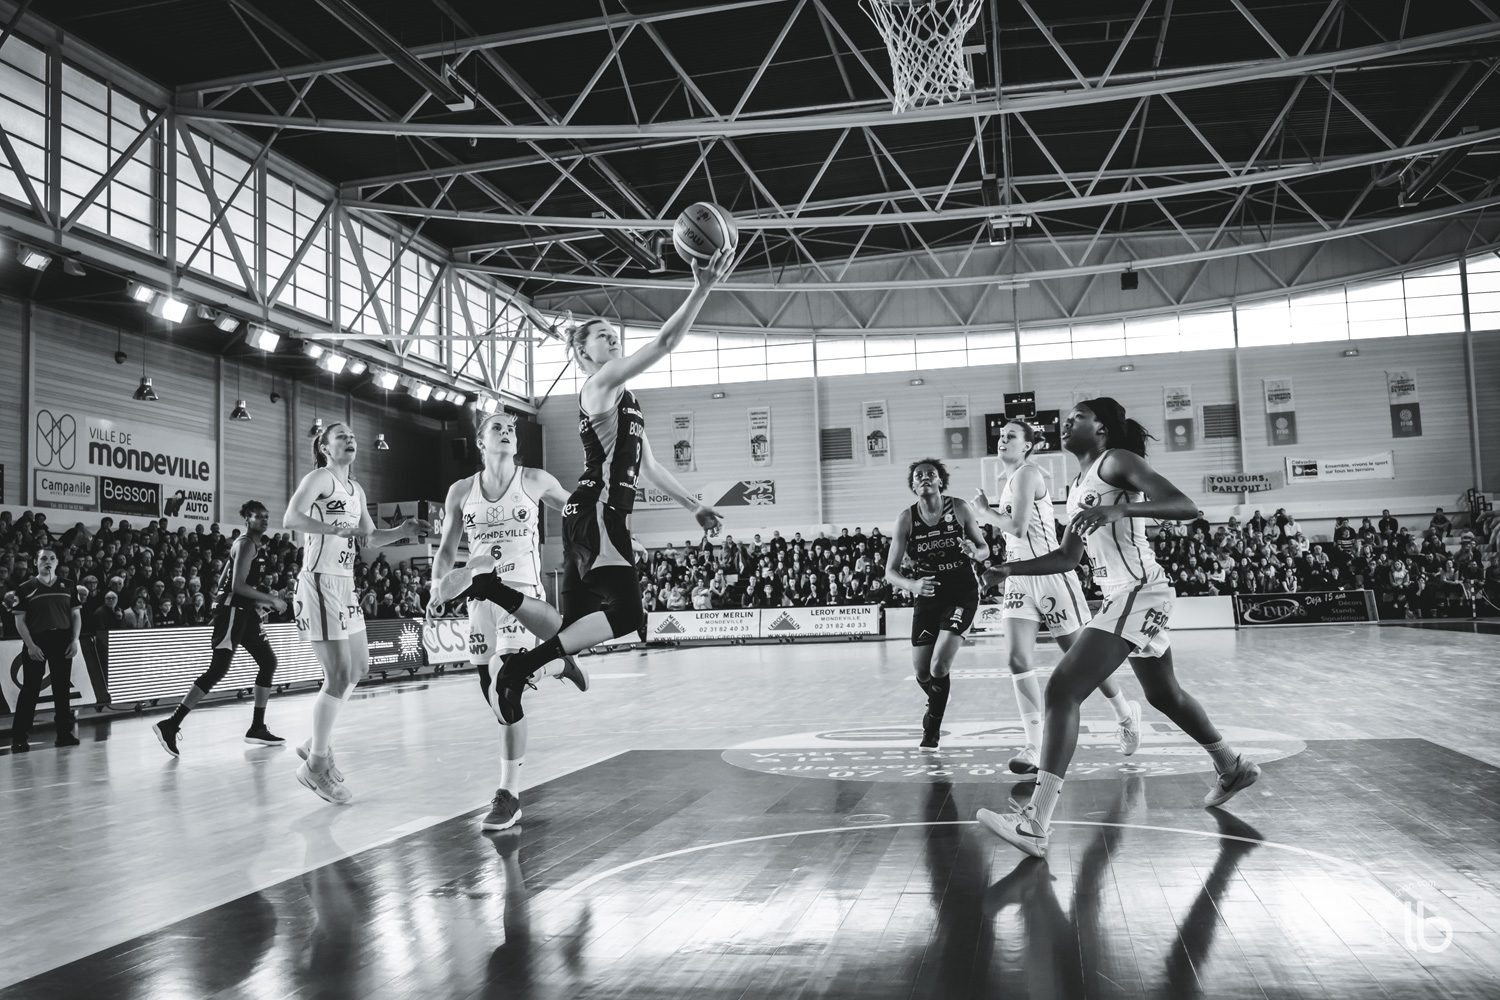 projet #allezlesfilles - basketball lfb mondeville rencontre bourges par laurence bichon